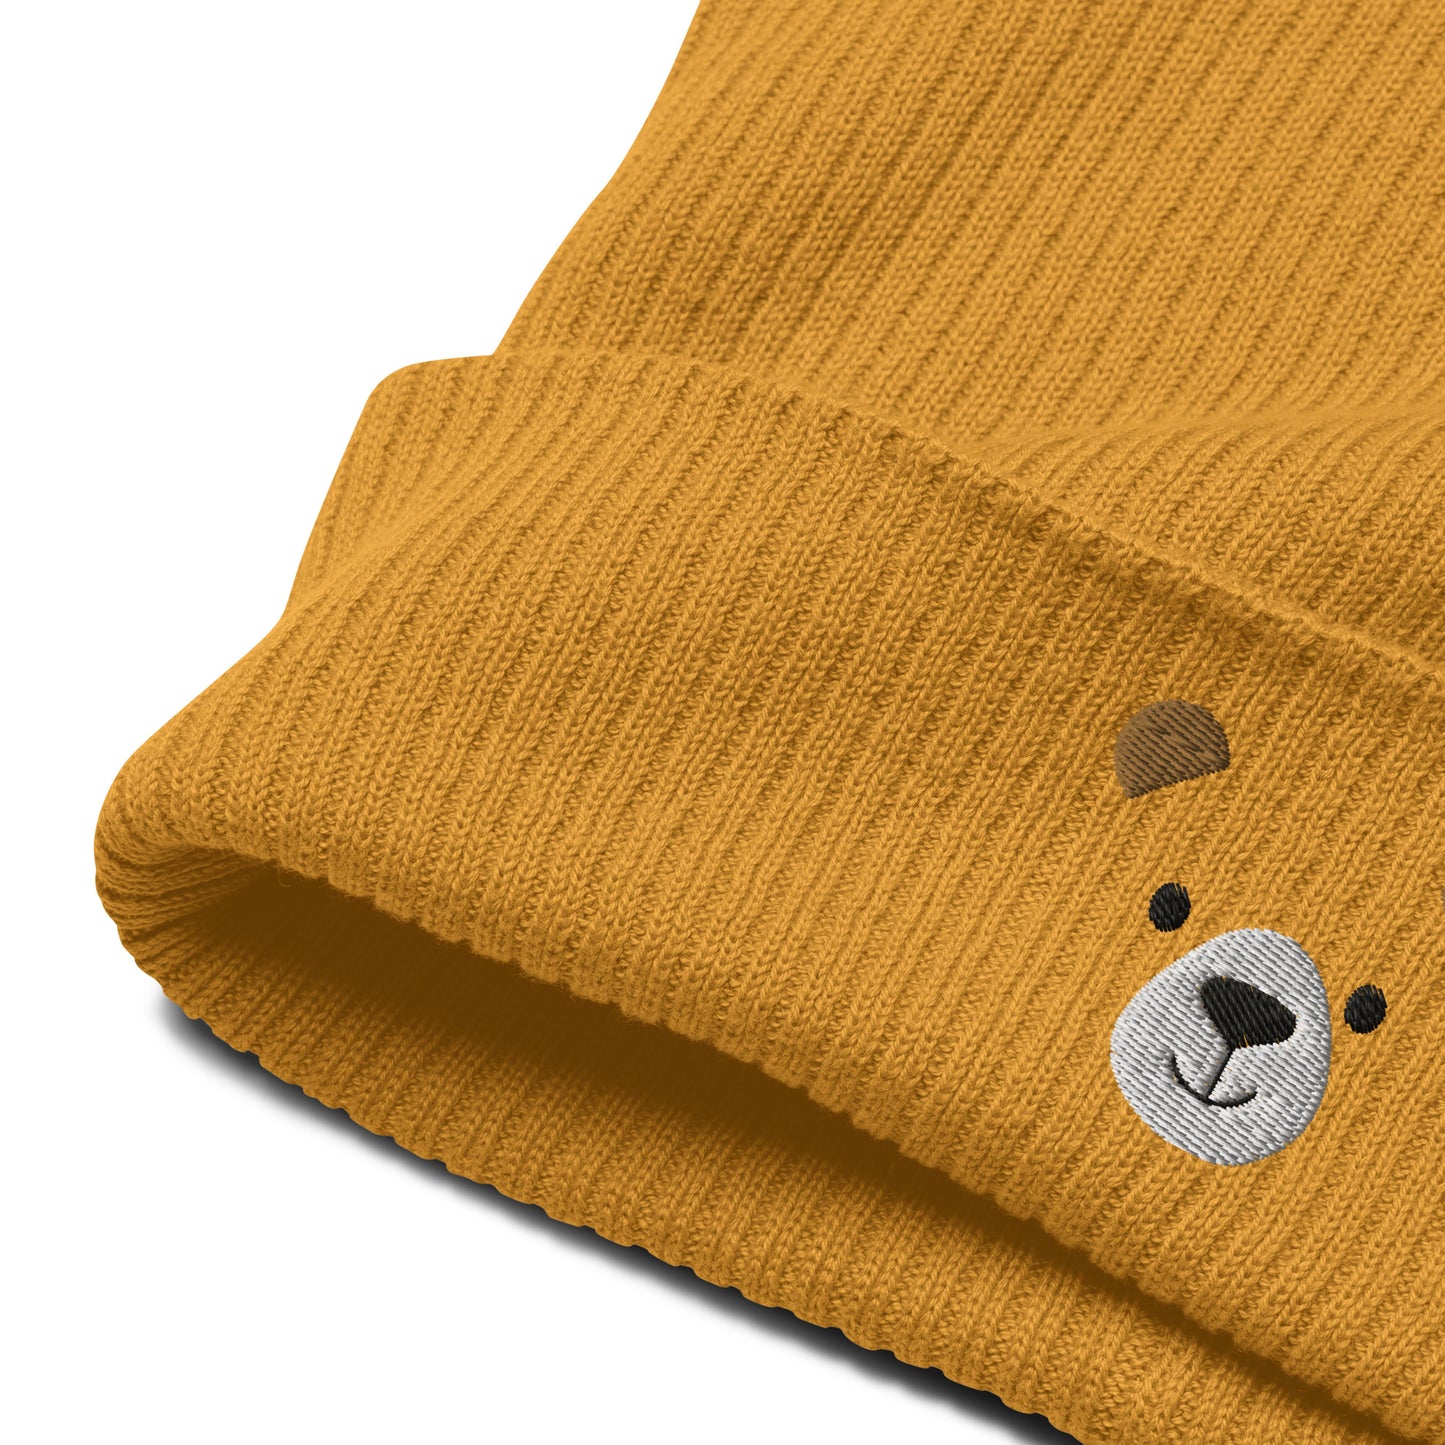 Niedźwiedzia twarz Organiczna prążkowana czapka, haftowany pomysł na prezent dla niej, ciepła czapka zimowa